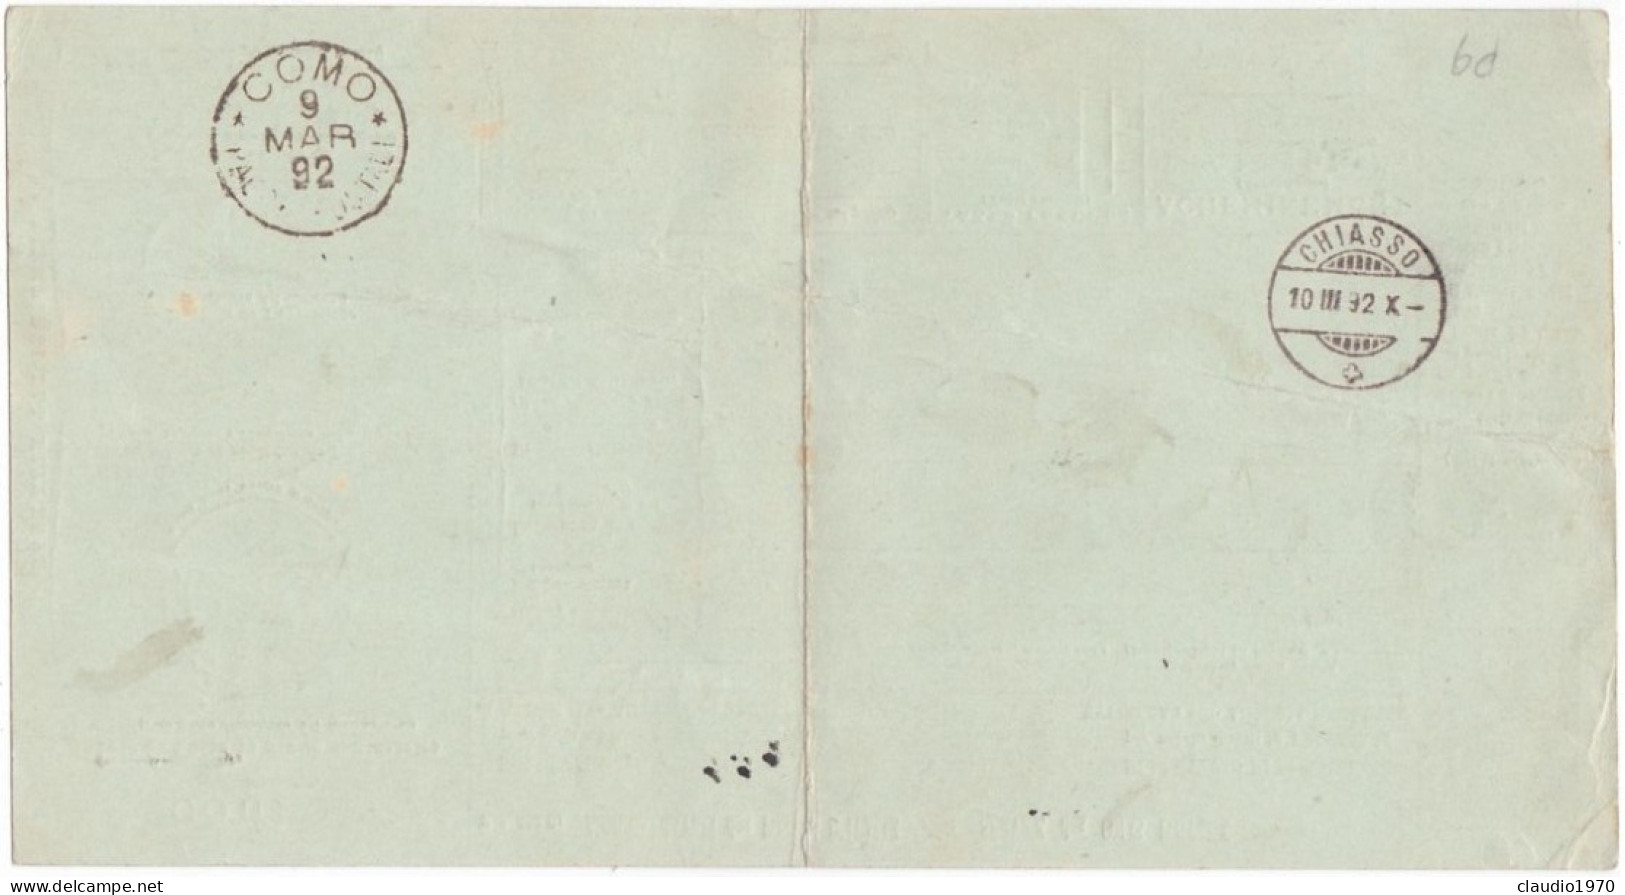 ITALIA - REGNO - CERNOBBIO (COMO) - BOLLETTINI PACCHI POSTALE L.1,25 - VIAGGIATO PER CHIASSO - SVIZZERA - 1892  - P. 9 - Paquetes Postales